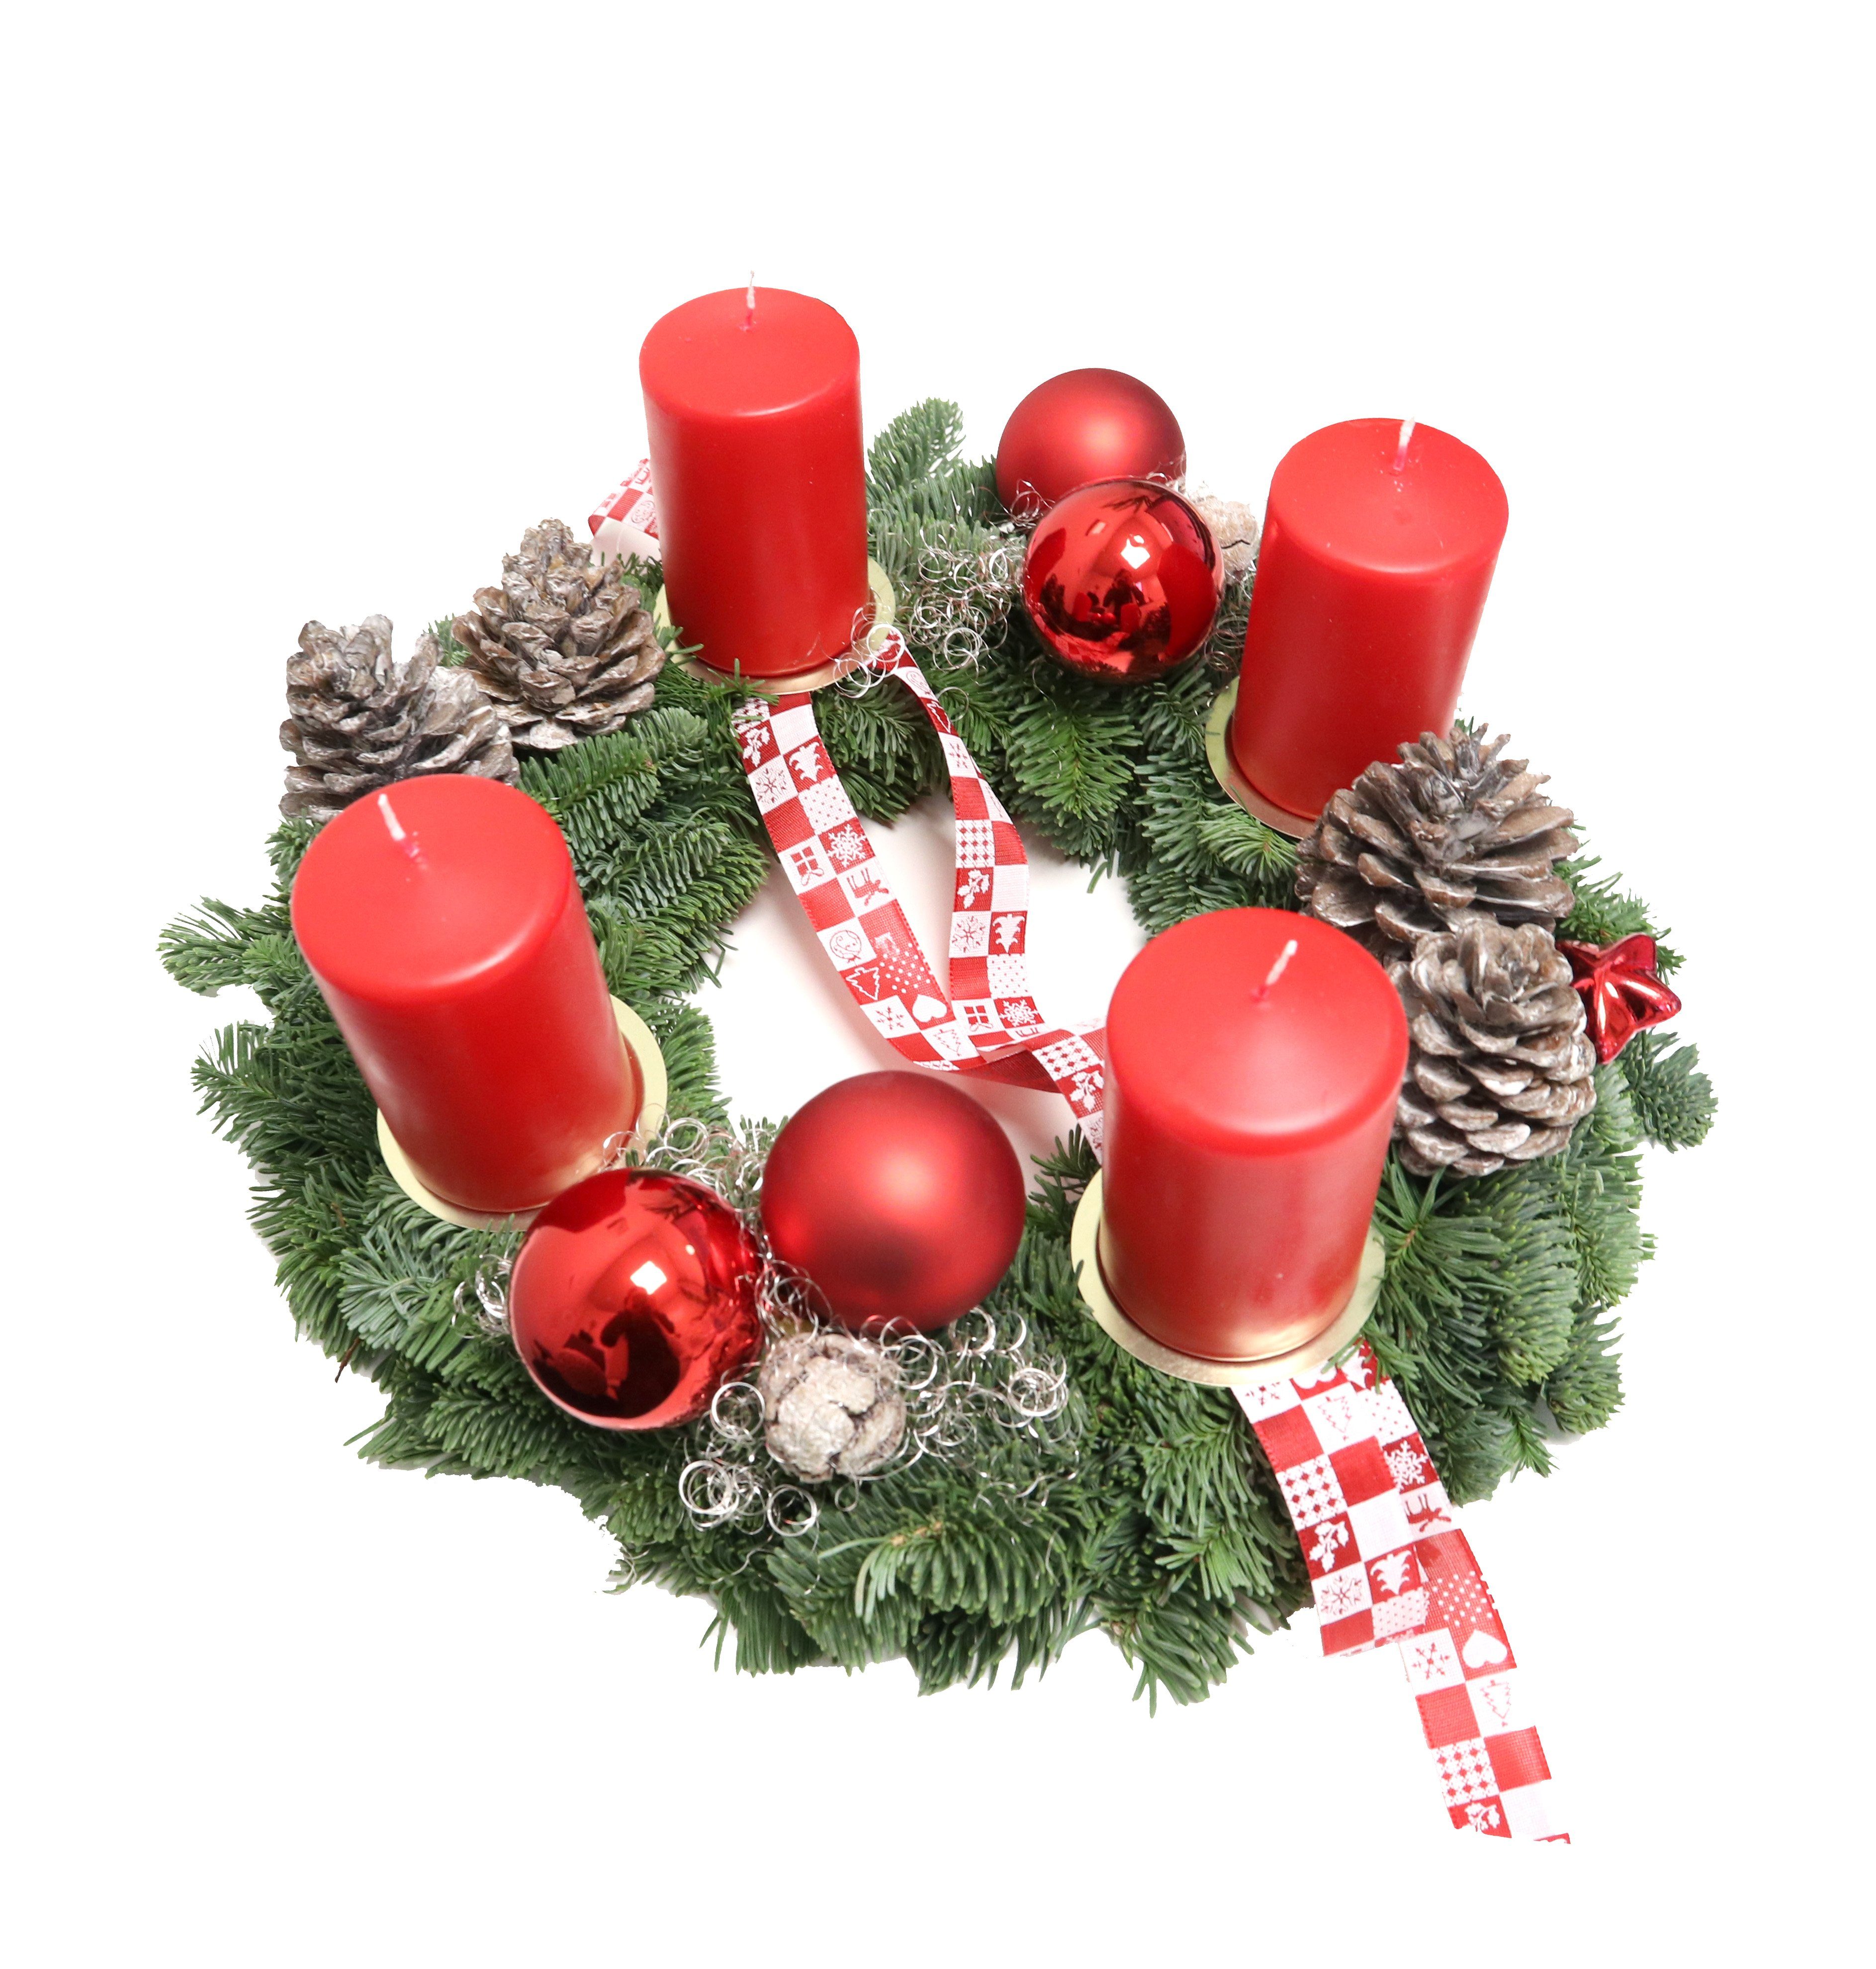 Gestecke Adventskranz Kranz deko Adventsgesteck Weihnachtsdeko 724,  PassionMade, Mit frische Tannenzweigen aus Deutschland hergestellt